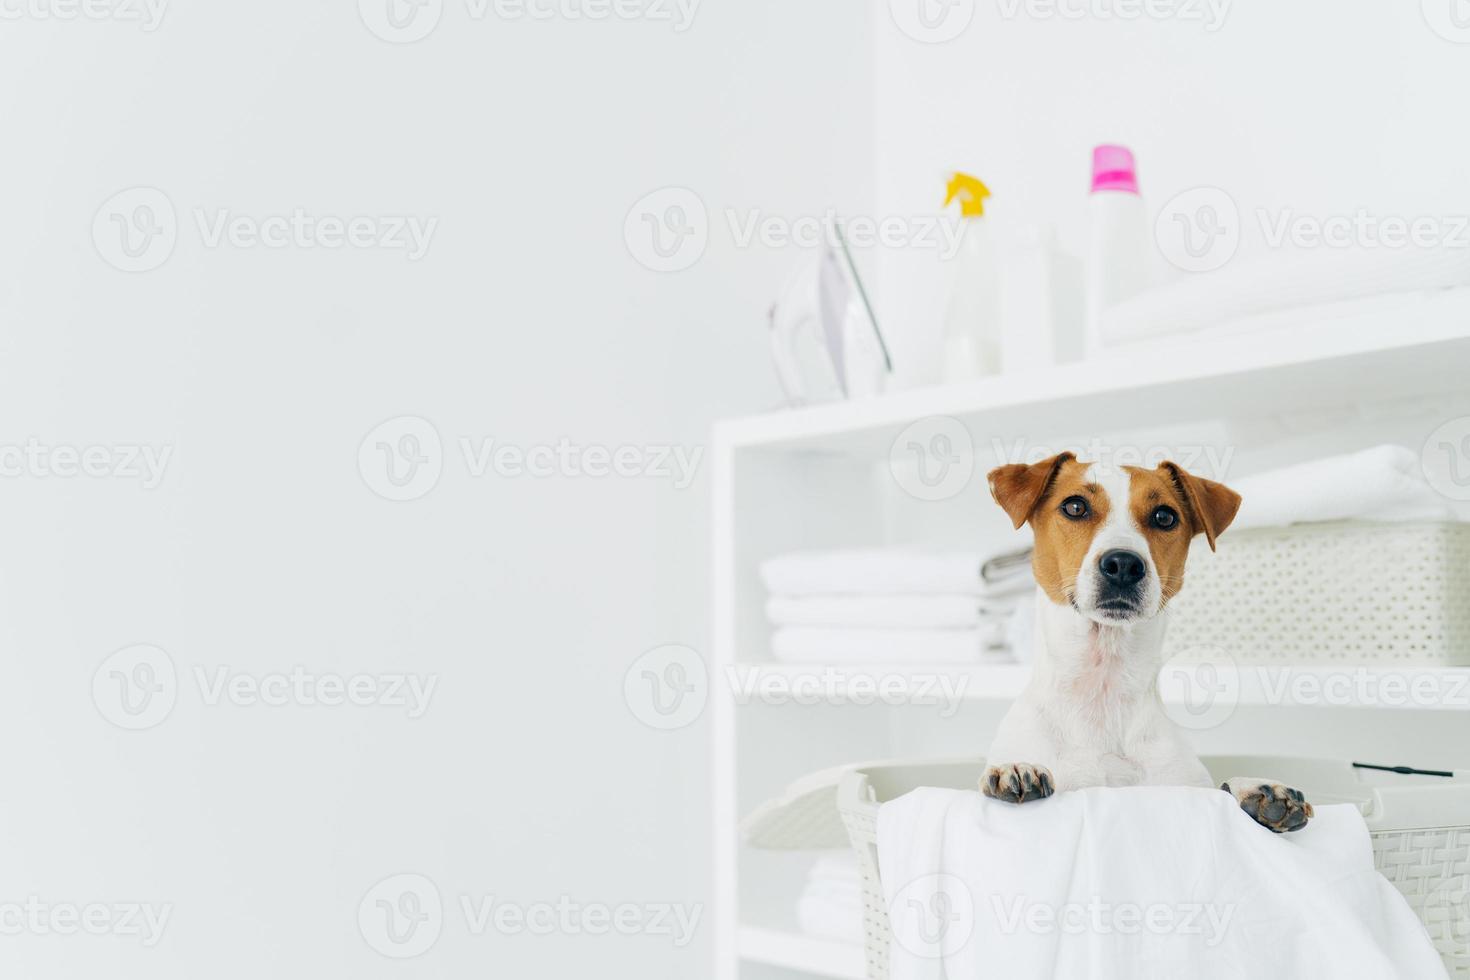 stamtavla hund poserar inuti den vita korgen i tvättstugan, hyllor med rena prydligt vikta handdukar och tvättmedel, kopieringsutrymme mot vit bakgrund foto